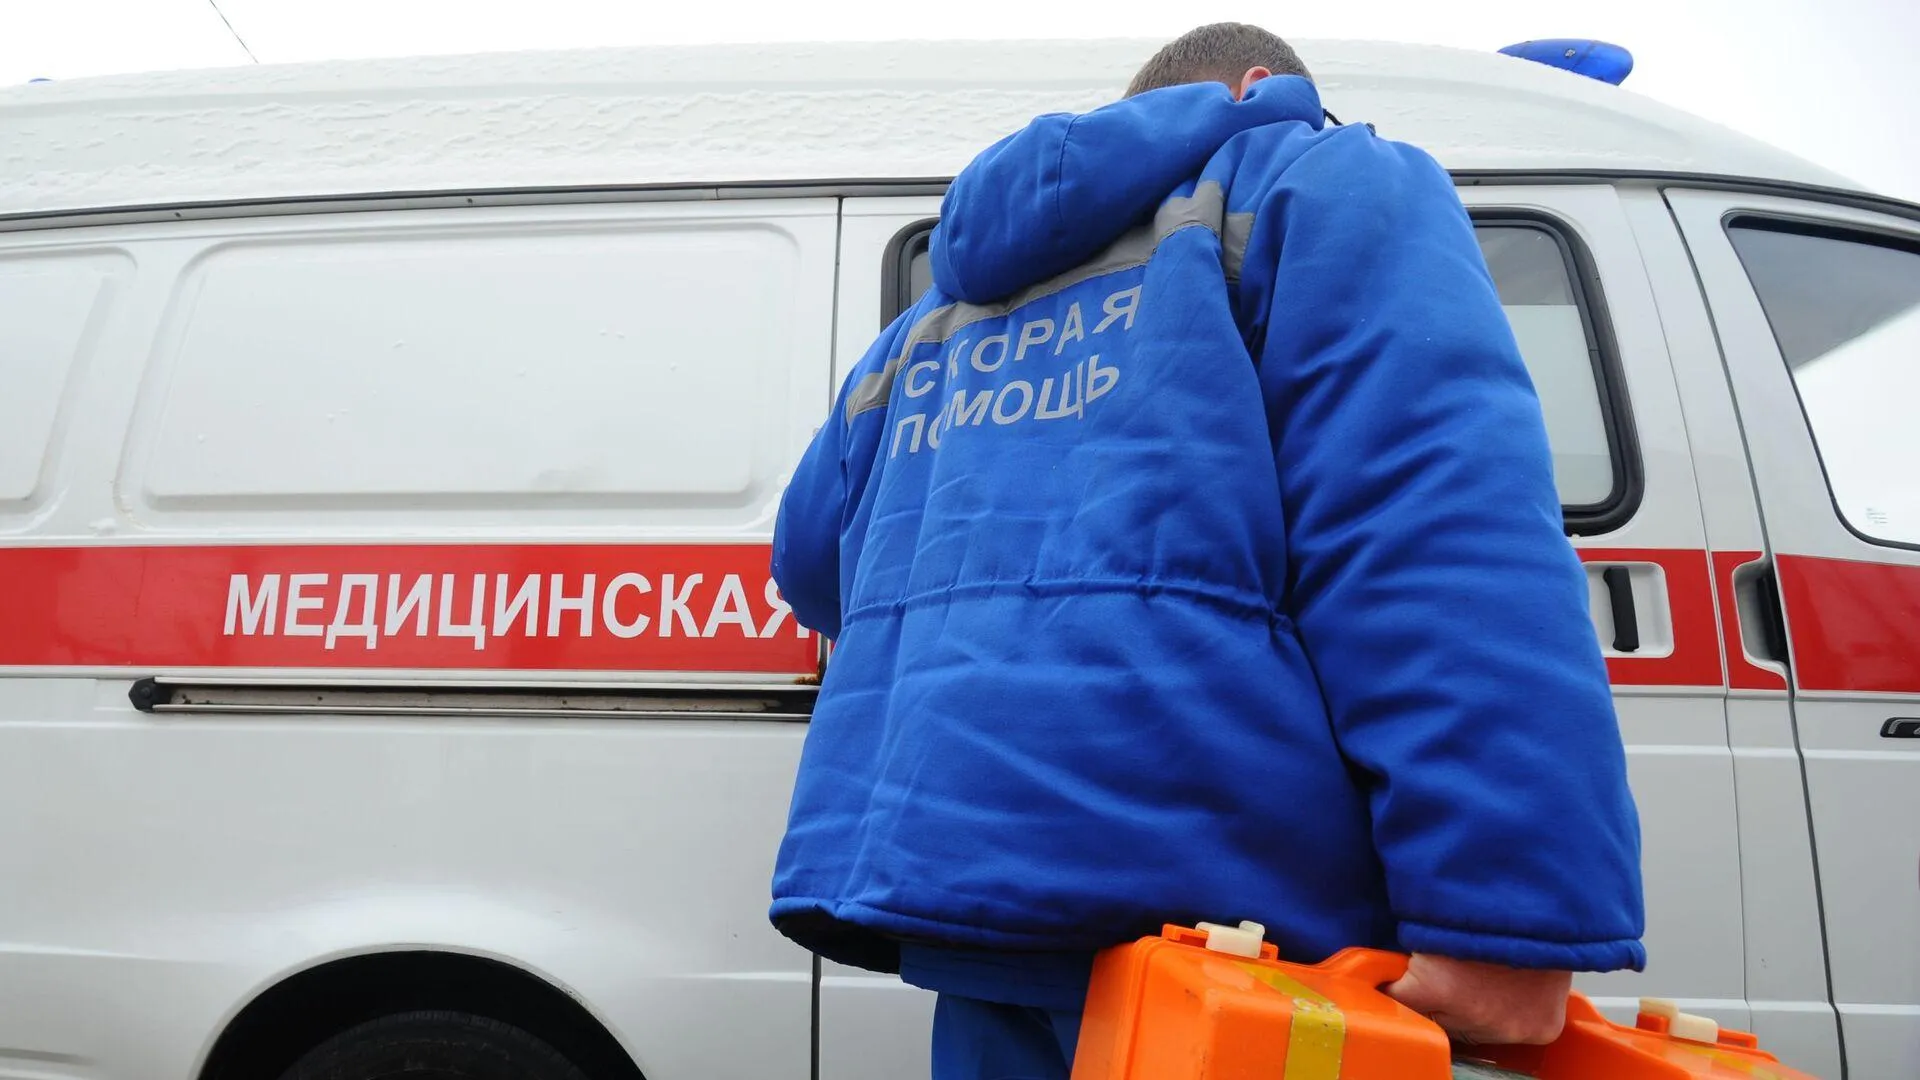 Помощь спасателей потребовалась медикам после вызова к 250-килограммовому москвичу